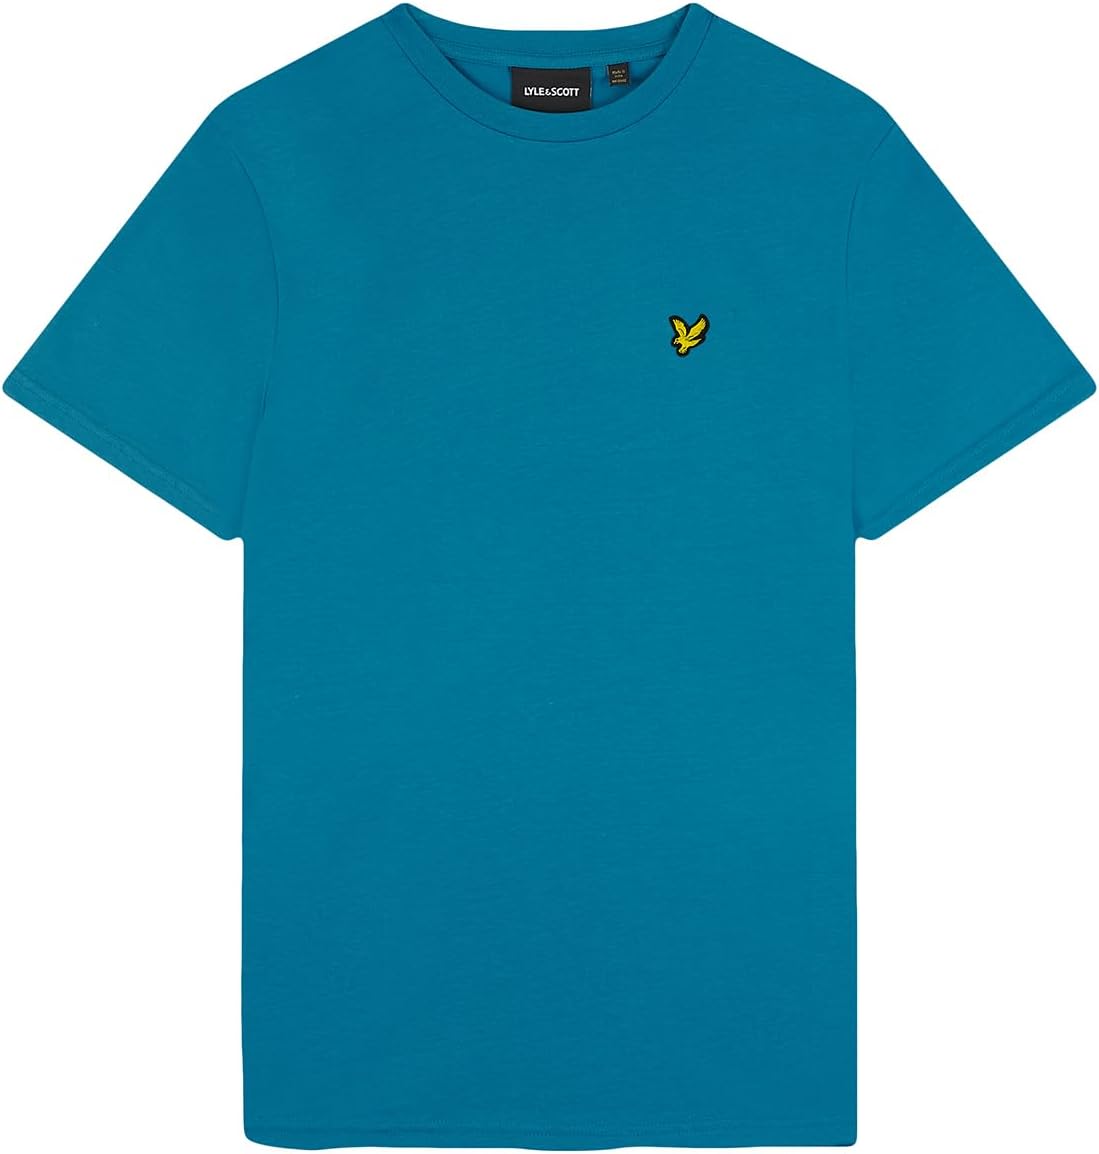 LYLE & SCOTT T-shirt Uomo - Blu modello TS400VOG